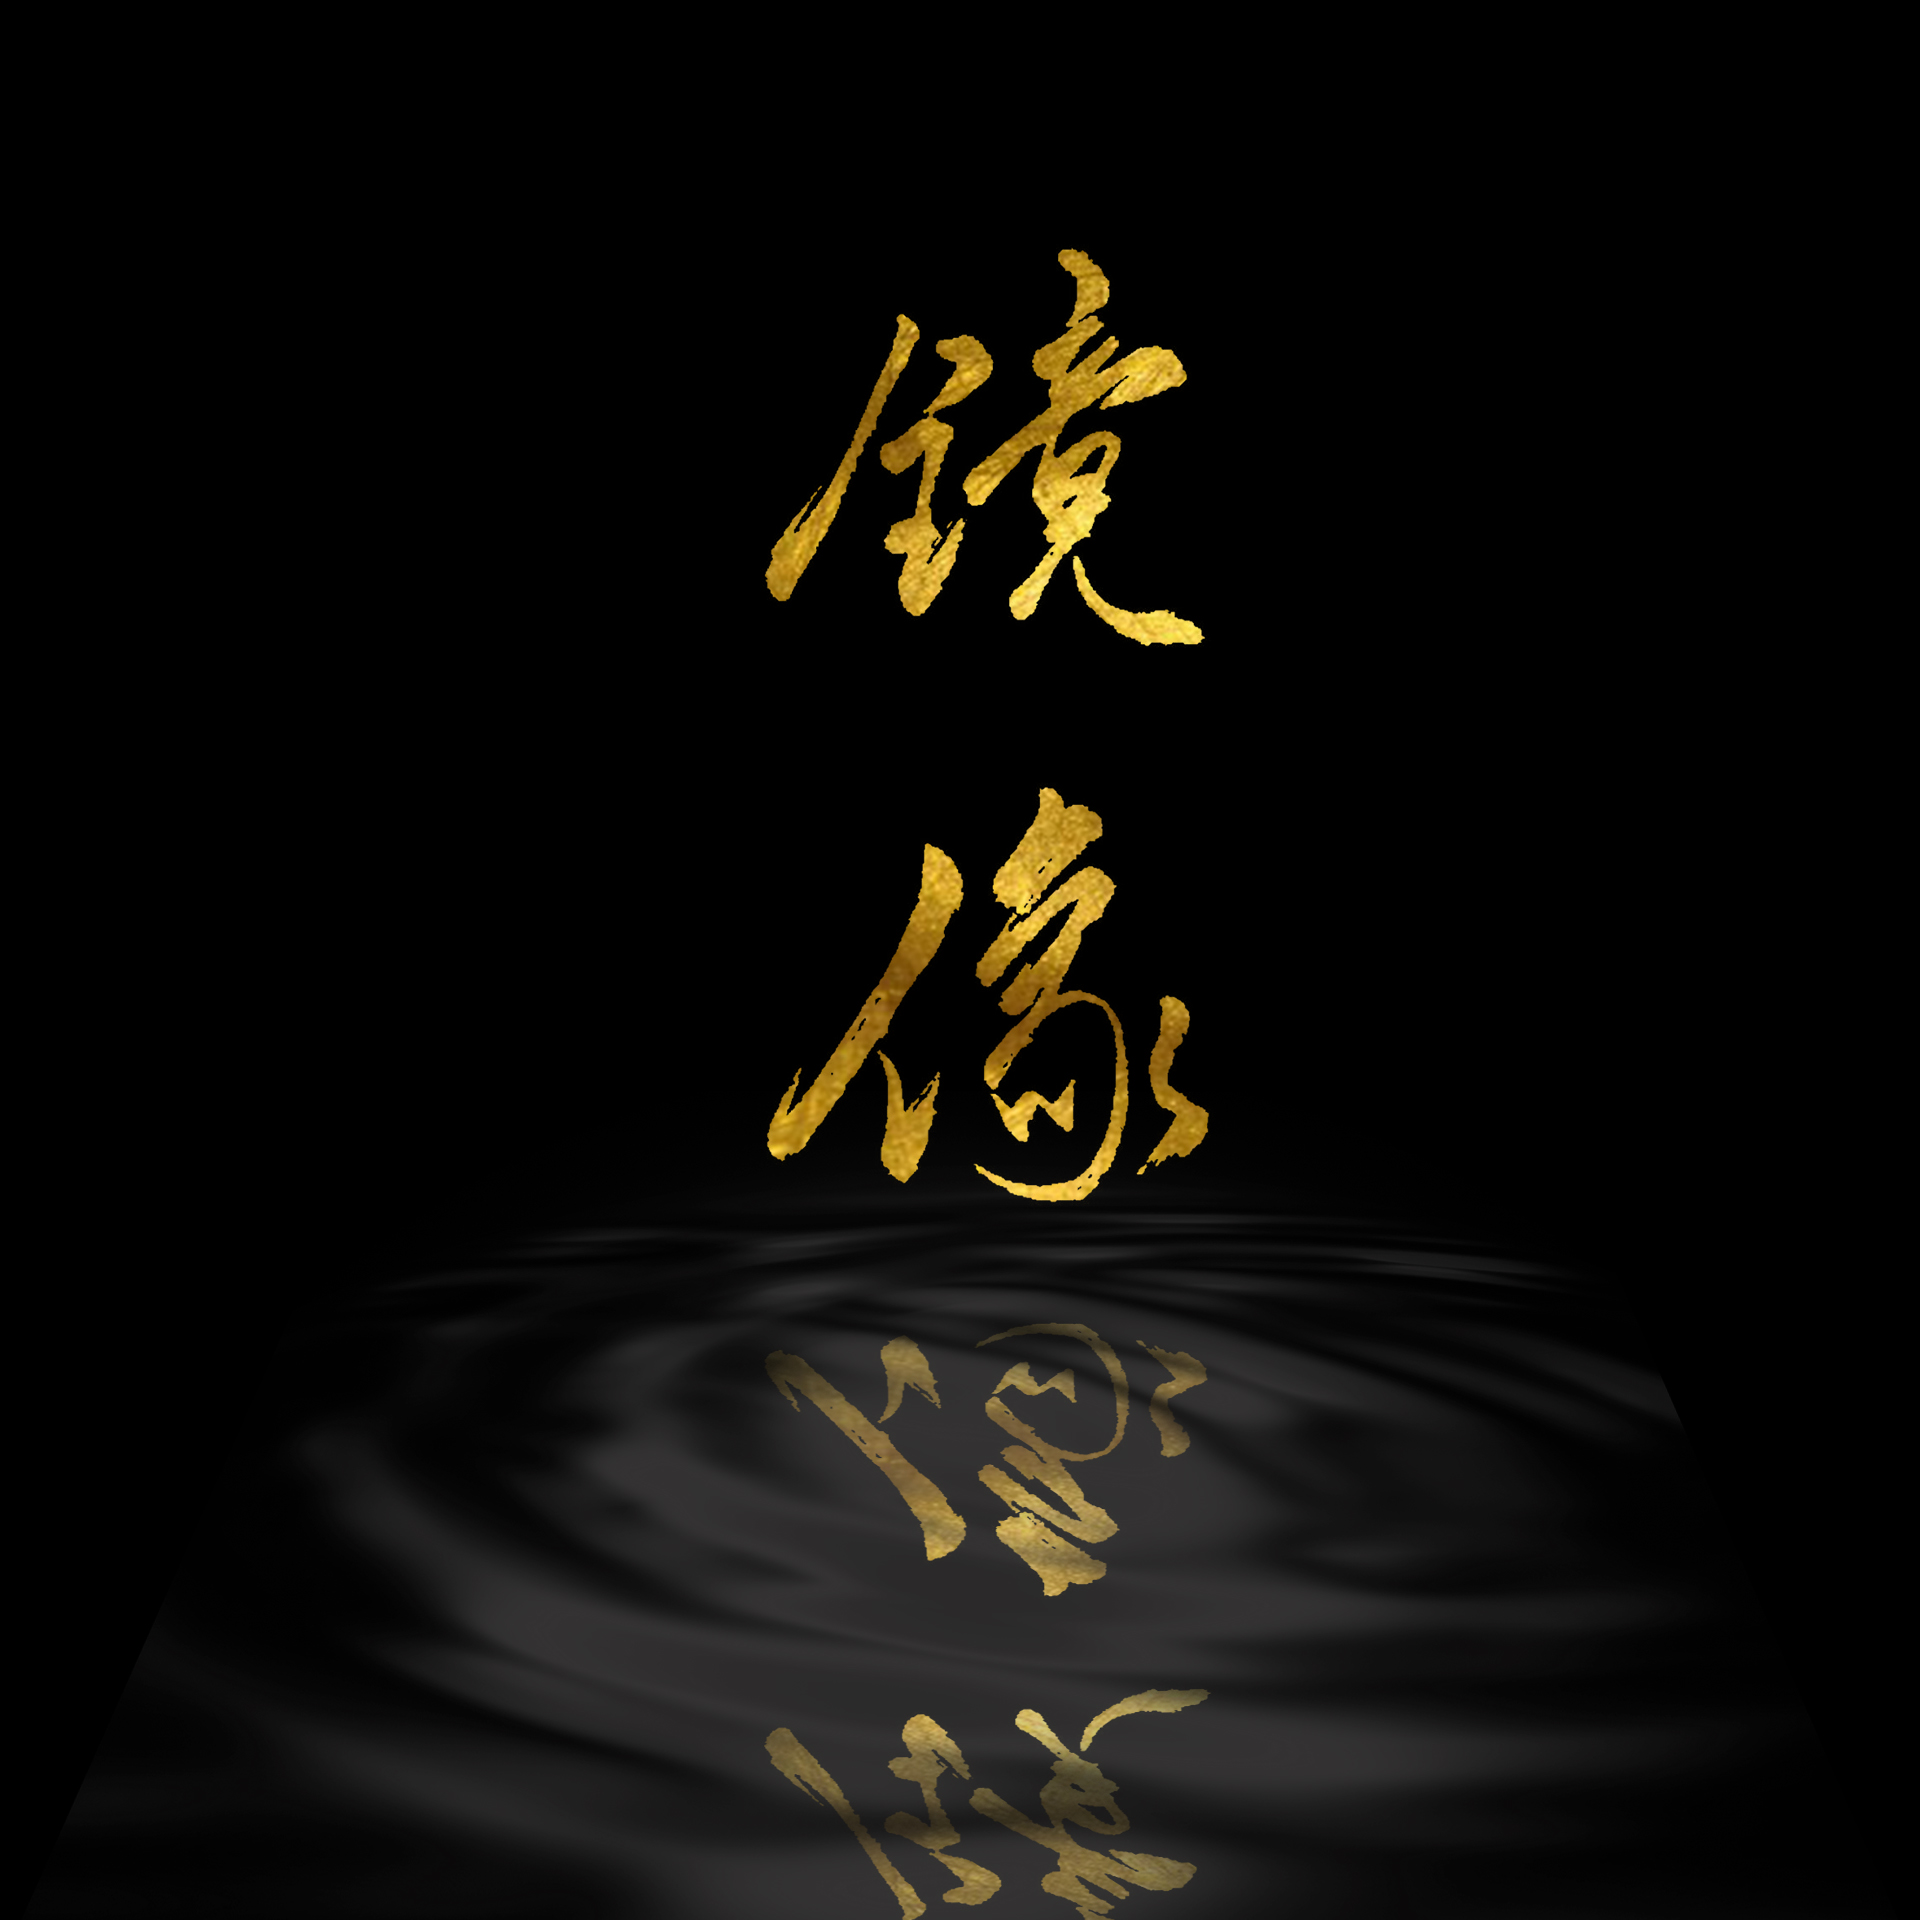 zhang hai ke jue se ge jing xiang Cover: yin pin guai wu